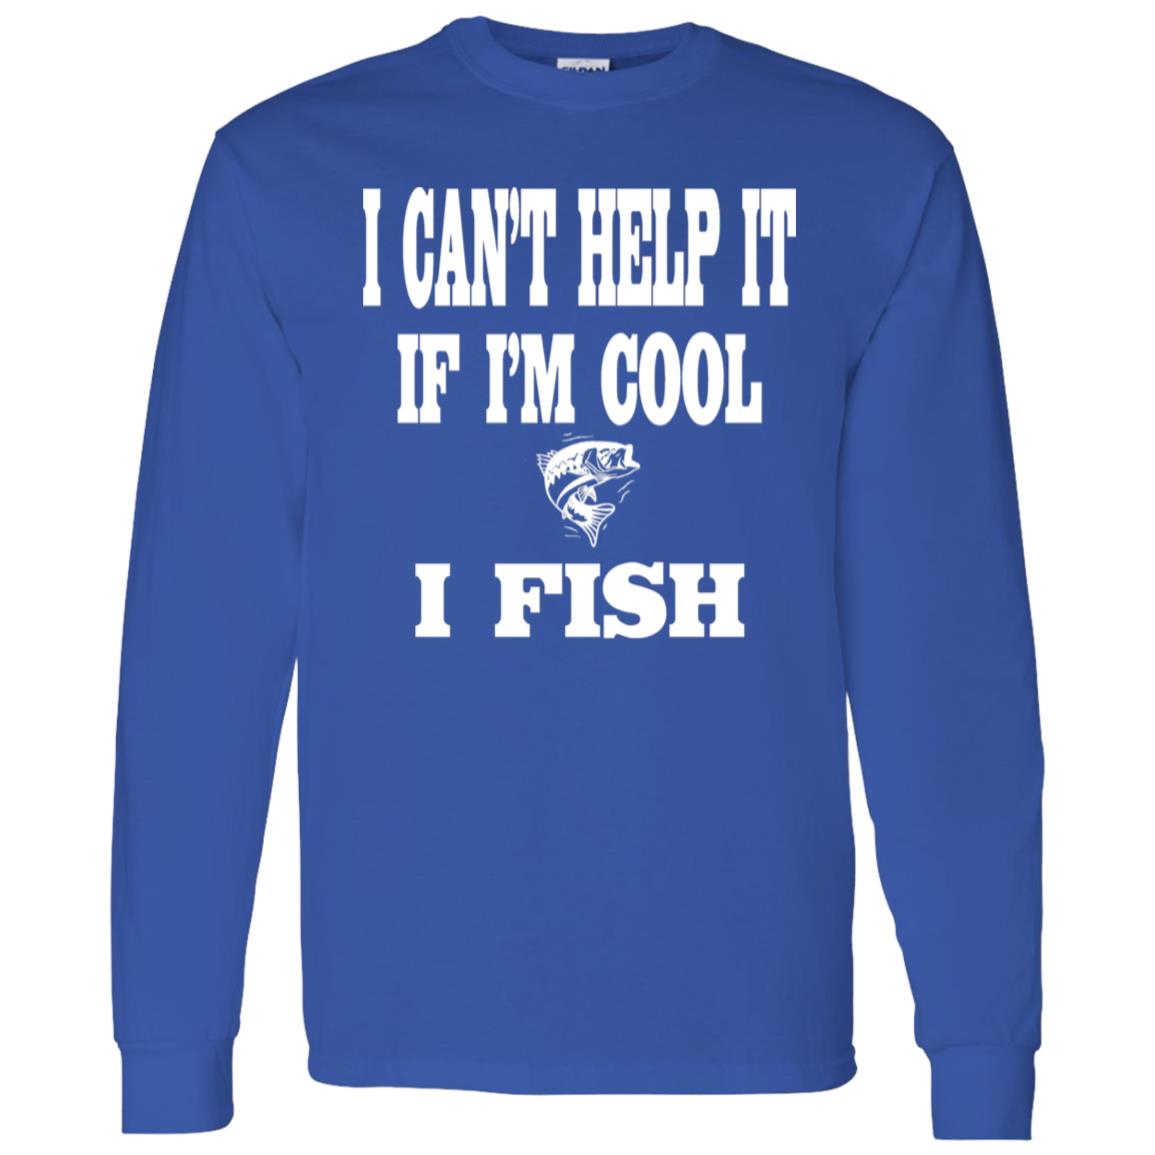 I can't help it if i'm cool i fish ls t-shirt royal